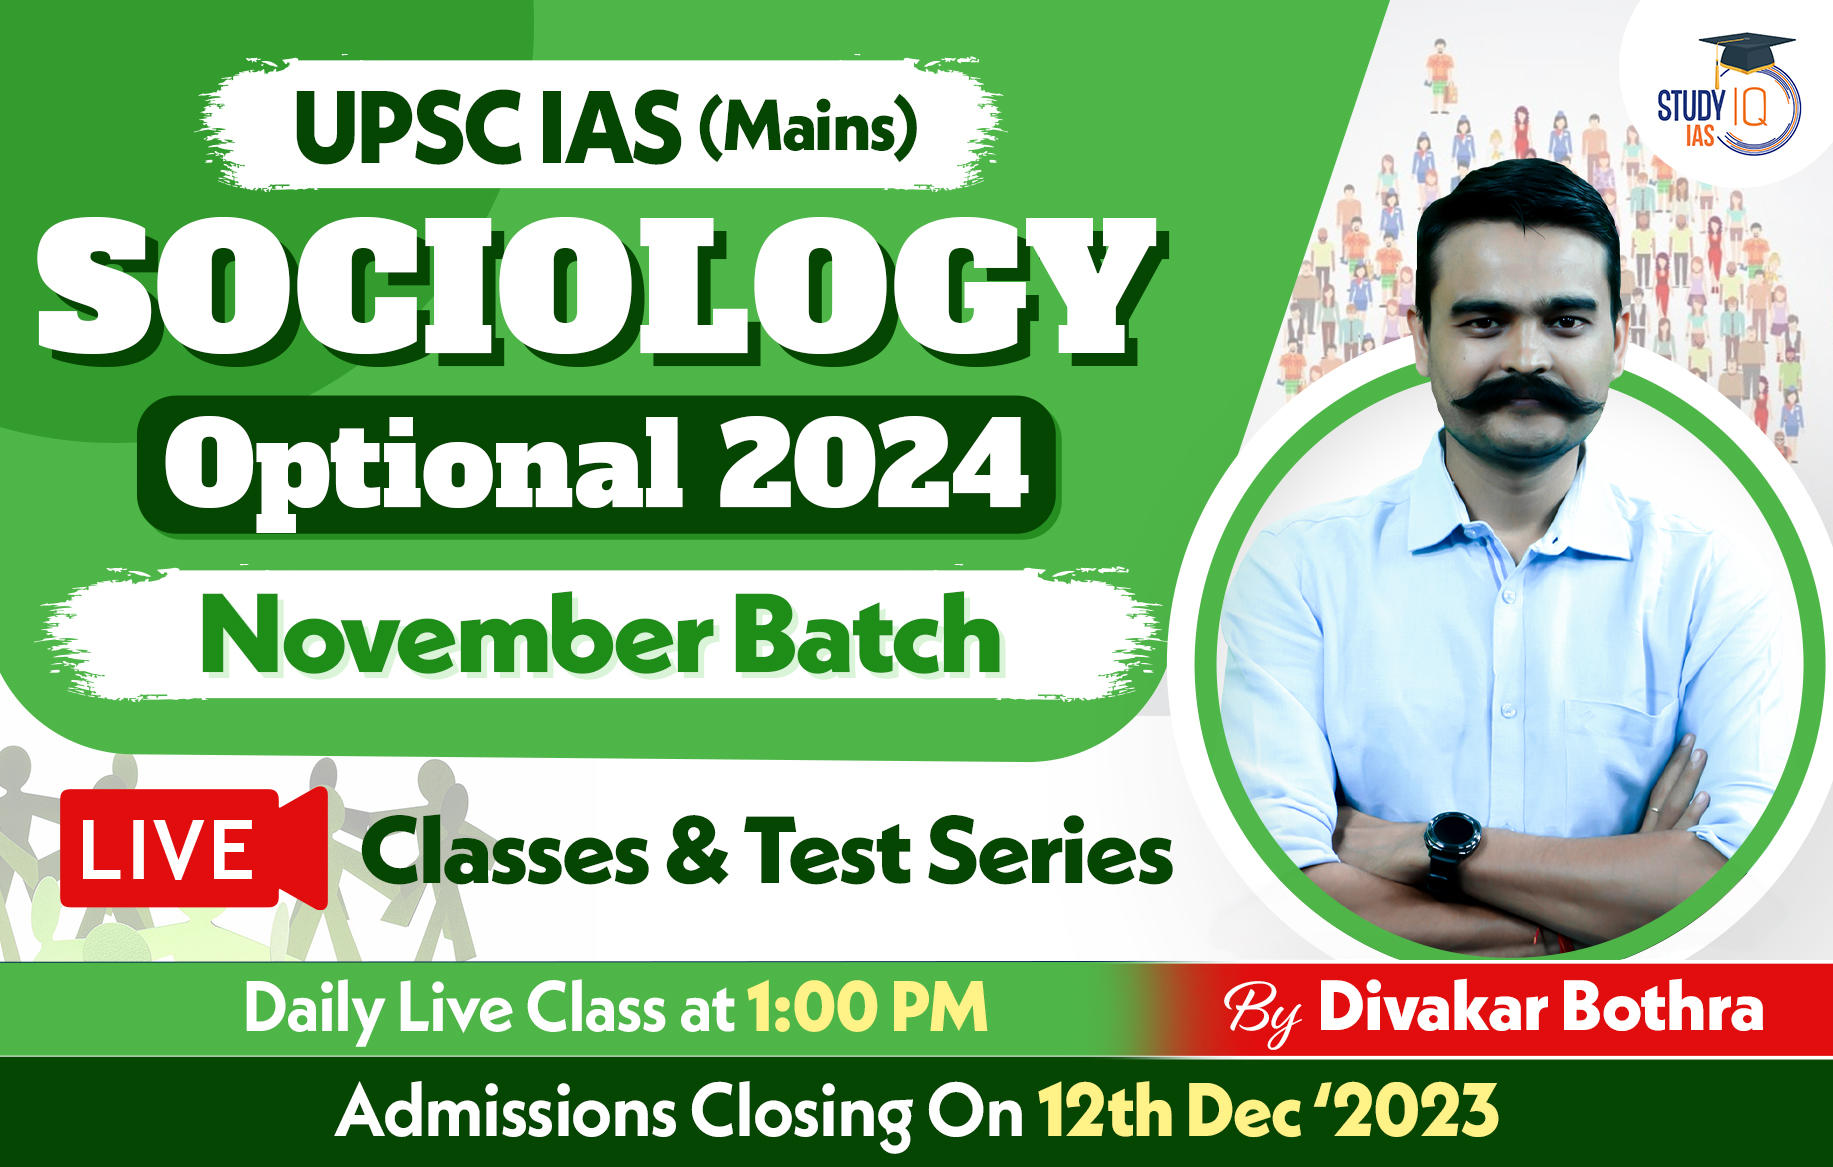 UPSC IAS (Mains) Sociology Optional Live 2024 (Comprehensive) November Batch